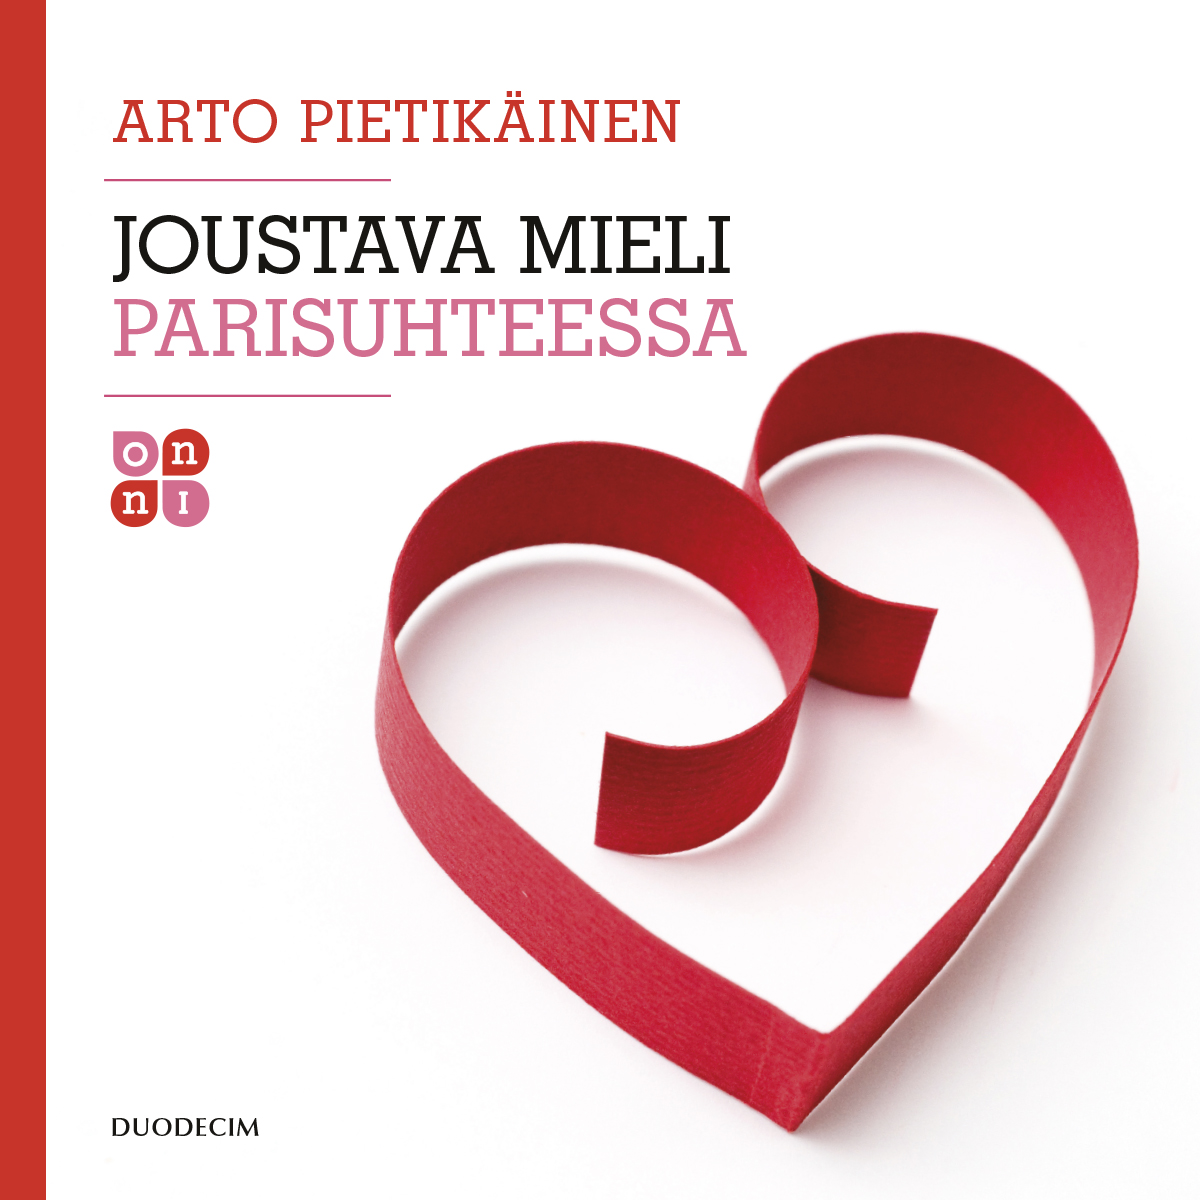 Pietikäinen, Arto - Joustava mieli parisuhteessa, audiobook